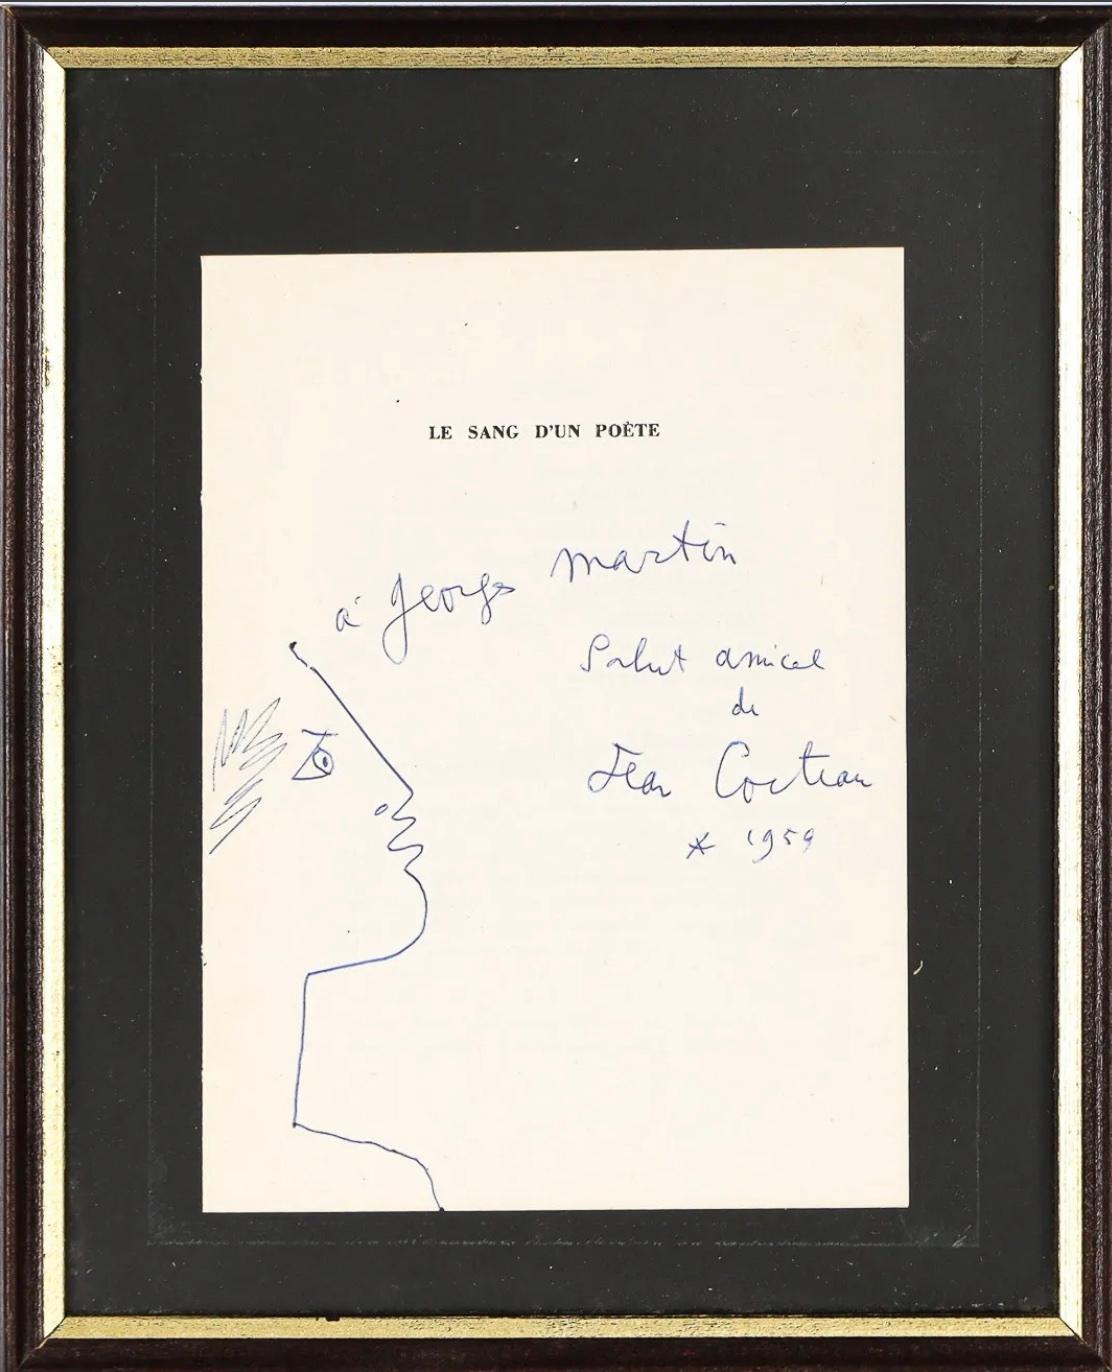 
Jean Cocteau (1889-1963), Profil mit Lorbeerkranz, 1959. Blaue Tinte auf dem Vorsatzblatt des Buches, 